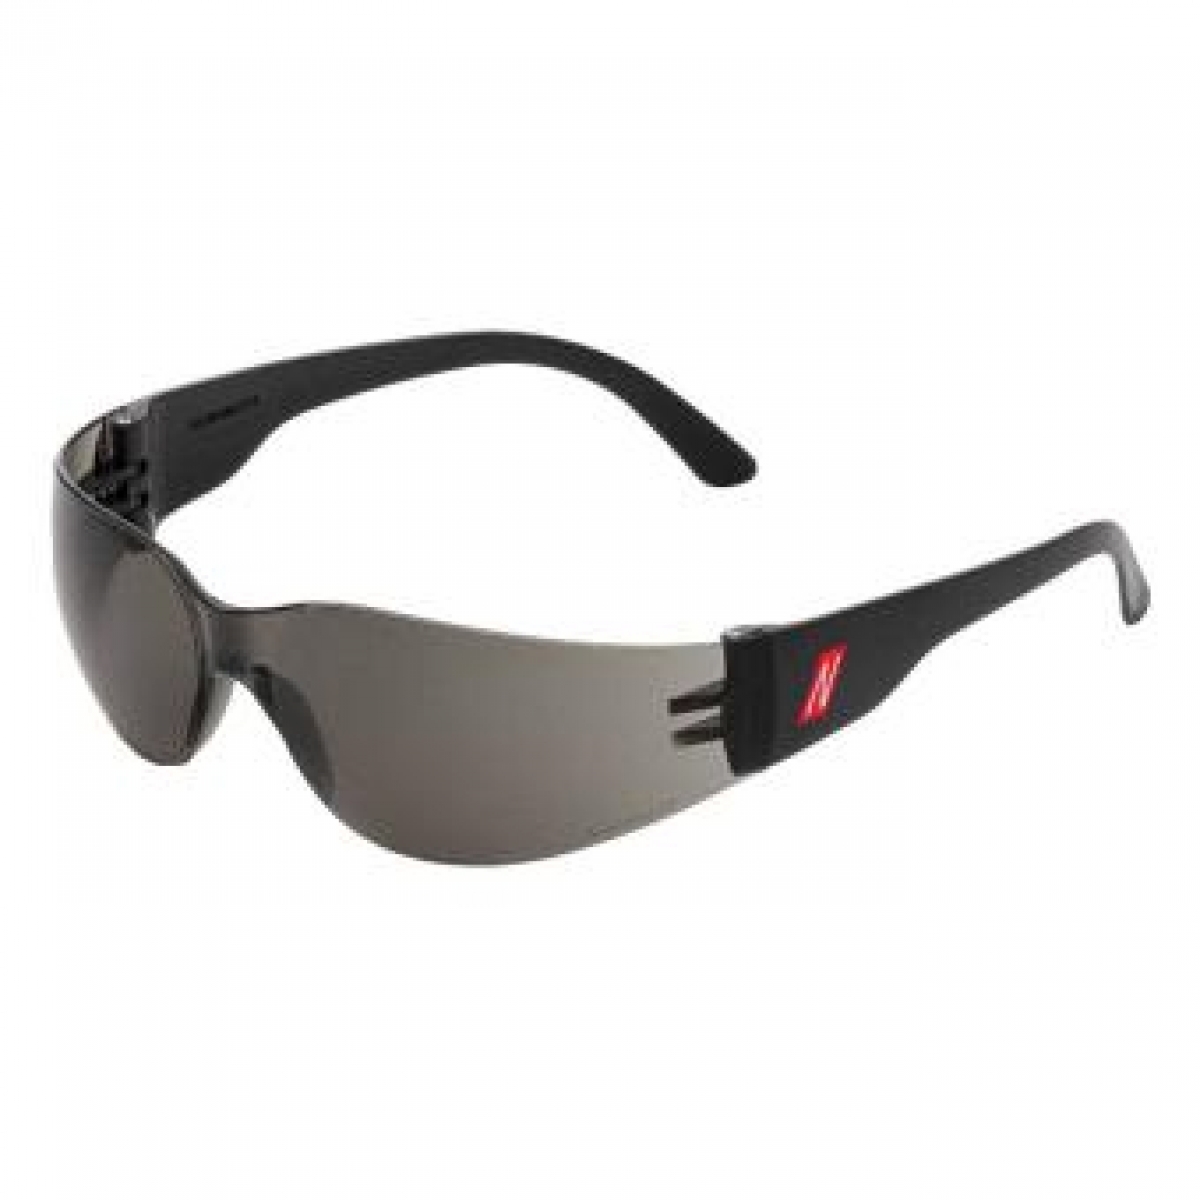 NITRAS VISION PROTECT BASIC, Schutzbrille, Tragkrper schwarz, Sichtscheiben sehr dunkel, EN 166